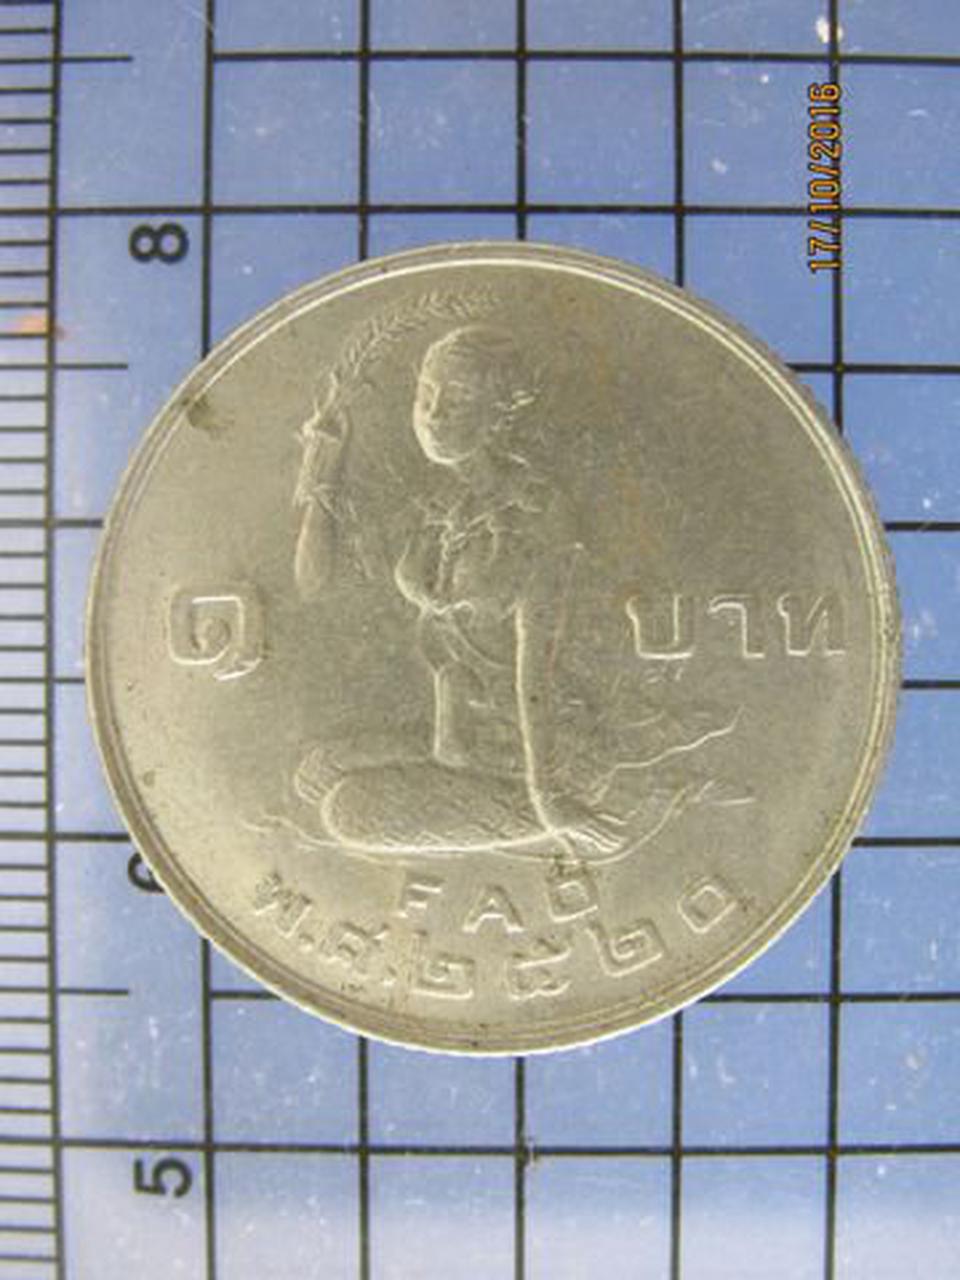 99 เหรียญกษาปณ์ที่ระลึก 1 บาท FAO โปรยข้าว ปี 2520 หายาก รูปเล็กที่ 1